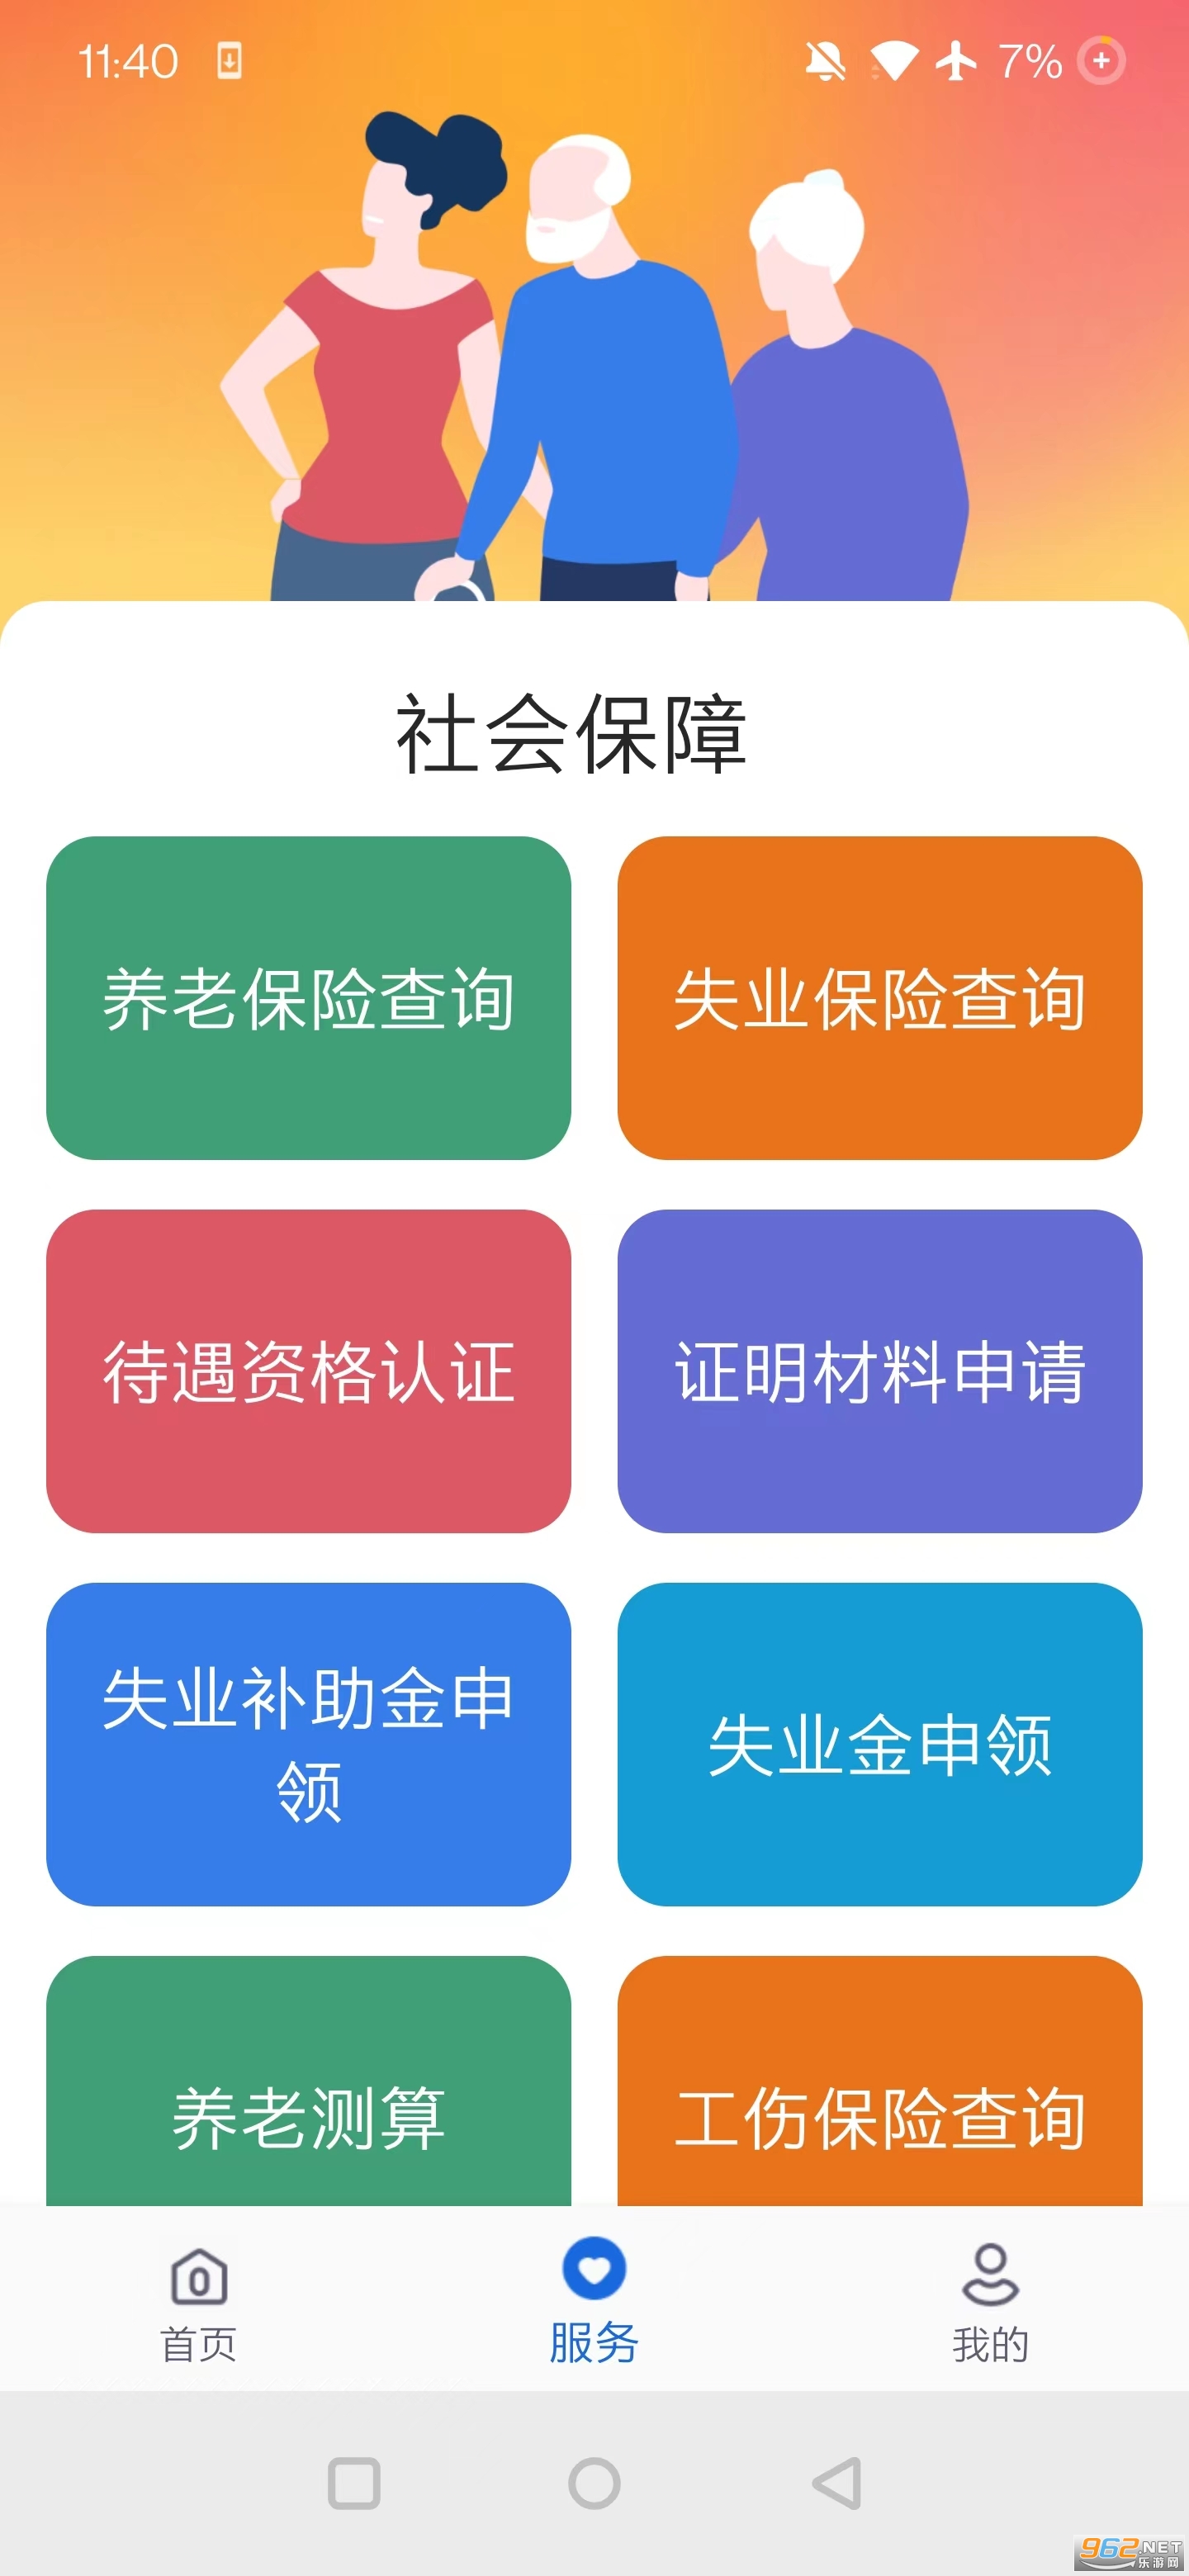 河北人社一体化公共服务平台v9.2.30 官方版截图2